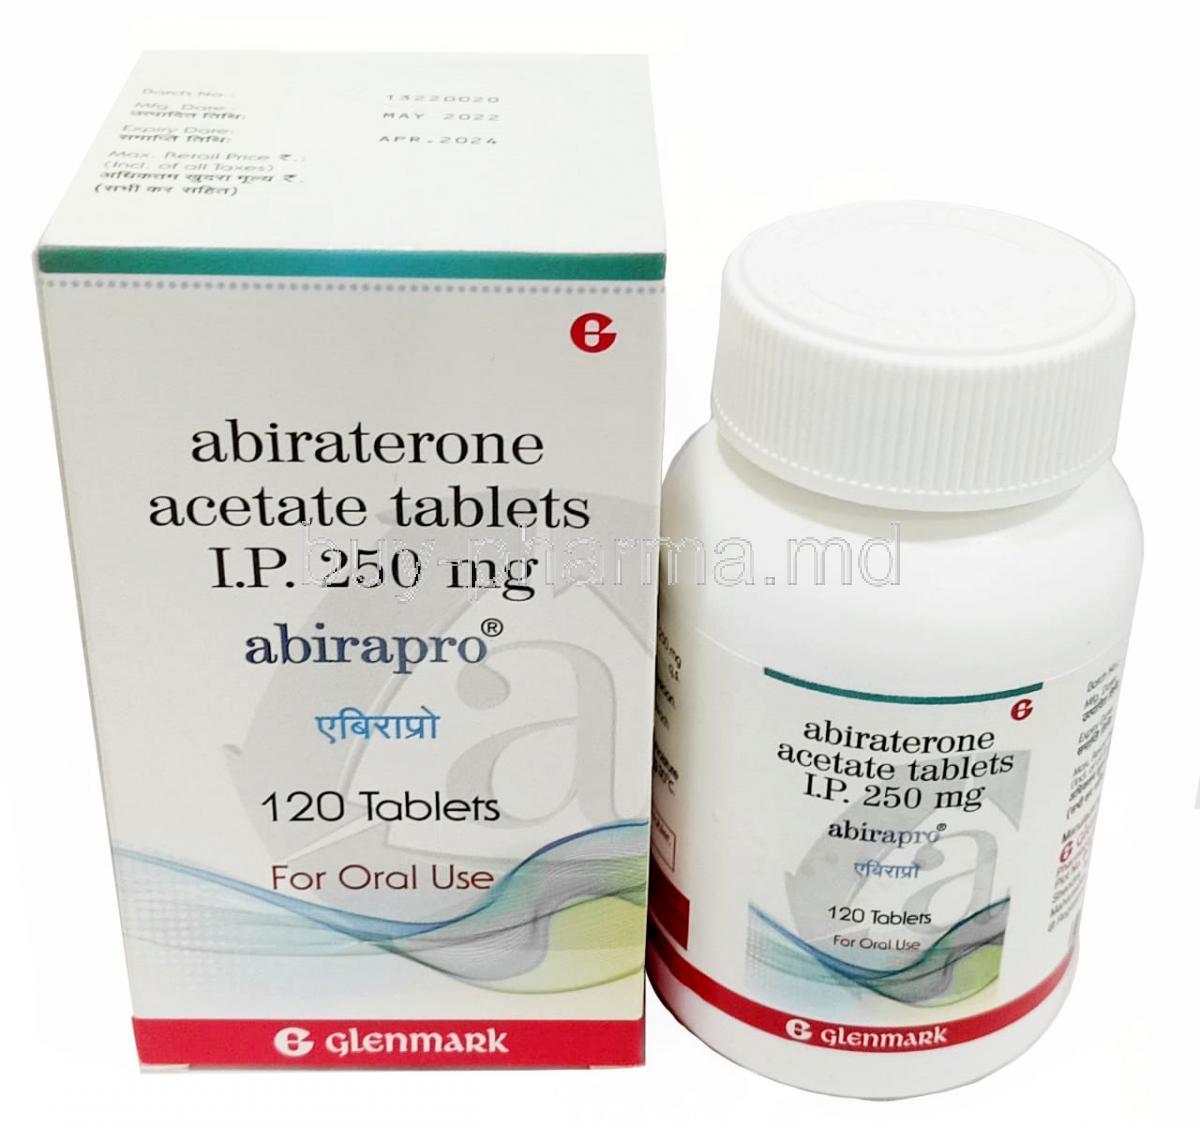 Abirapro, Abiraterone Acetate 250 mg, 120 tablets, Glenmark, Box, Bottle